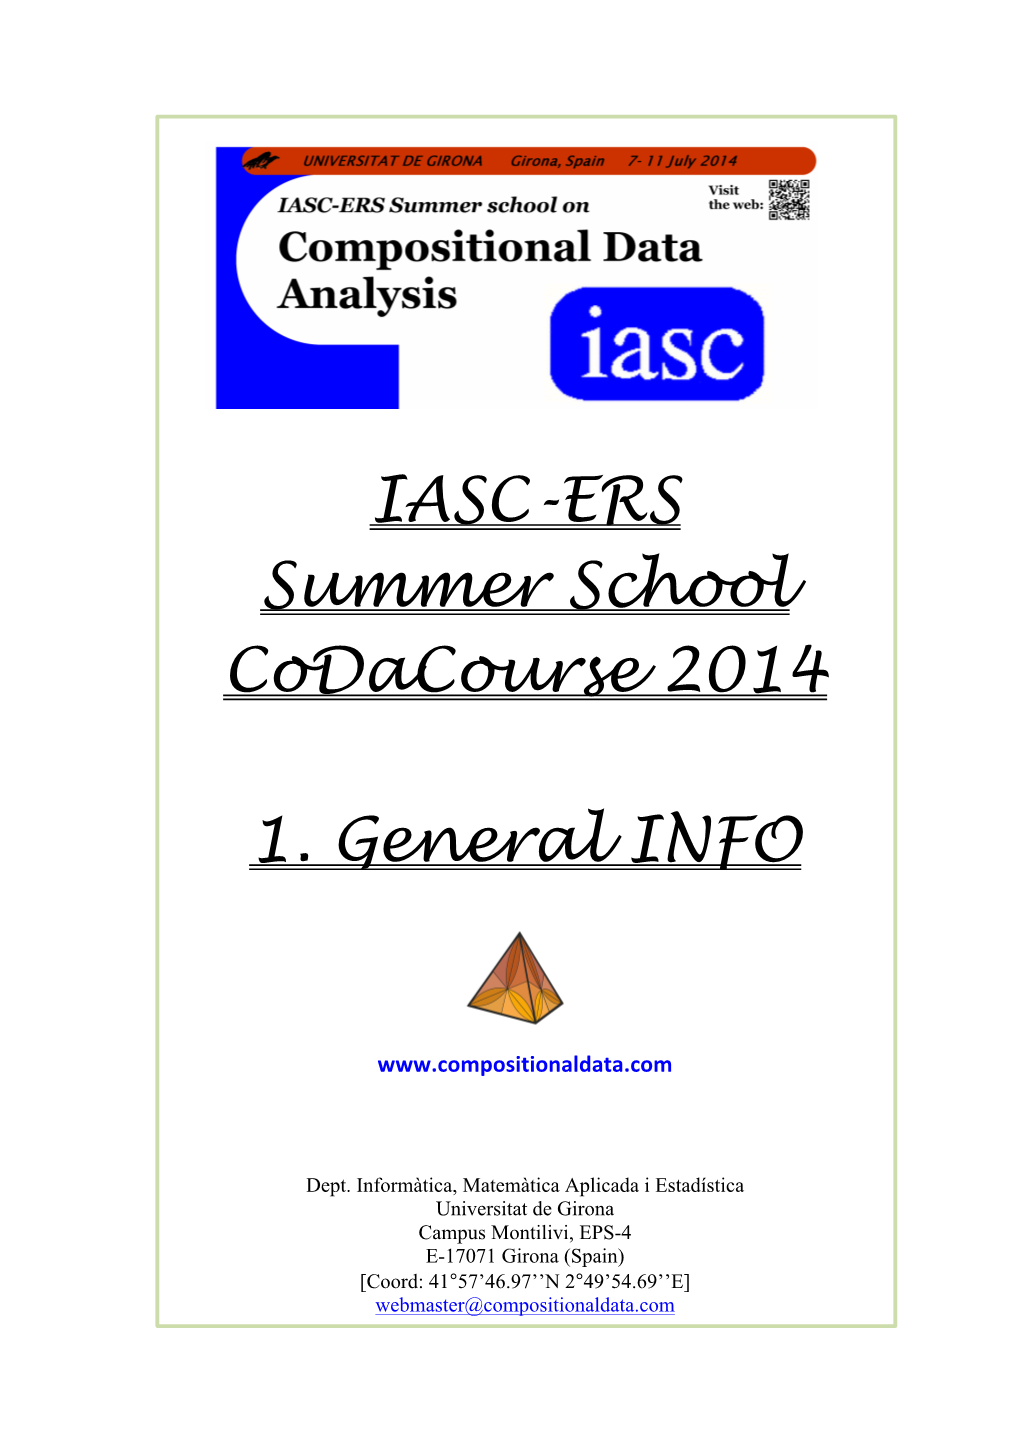 IASC-ERS Summer School Codacourse 2014 1. General INFO